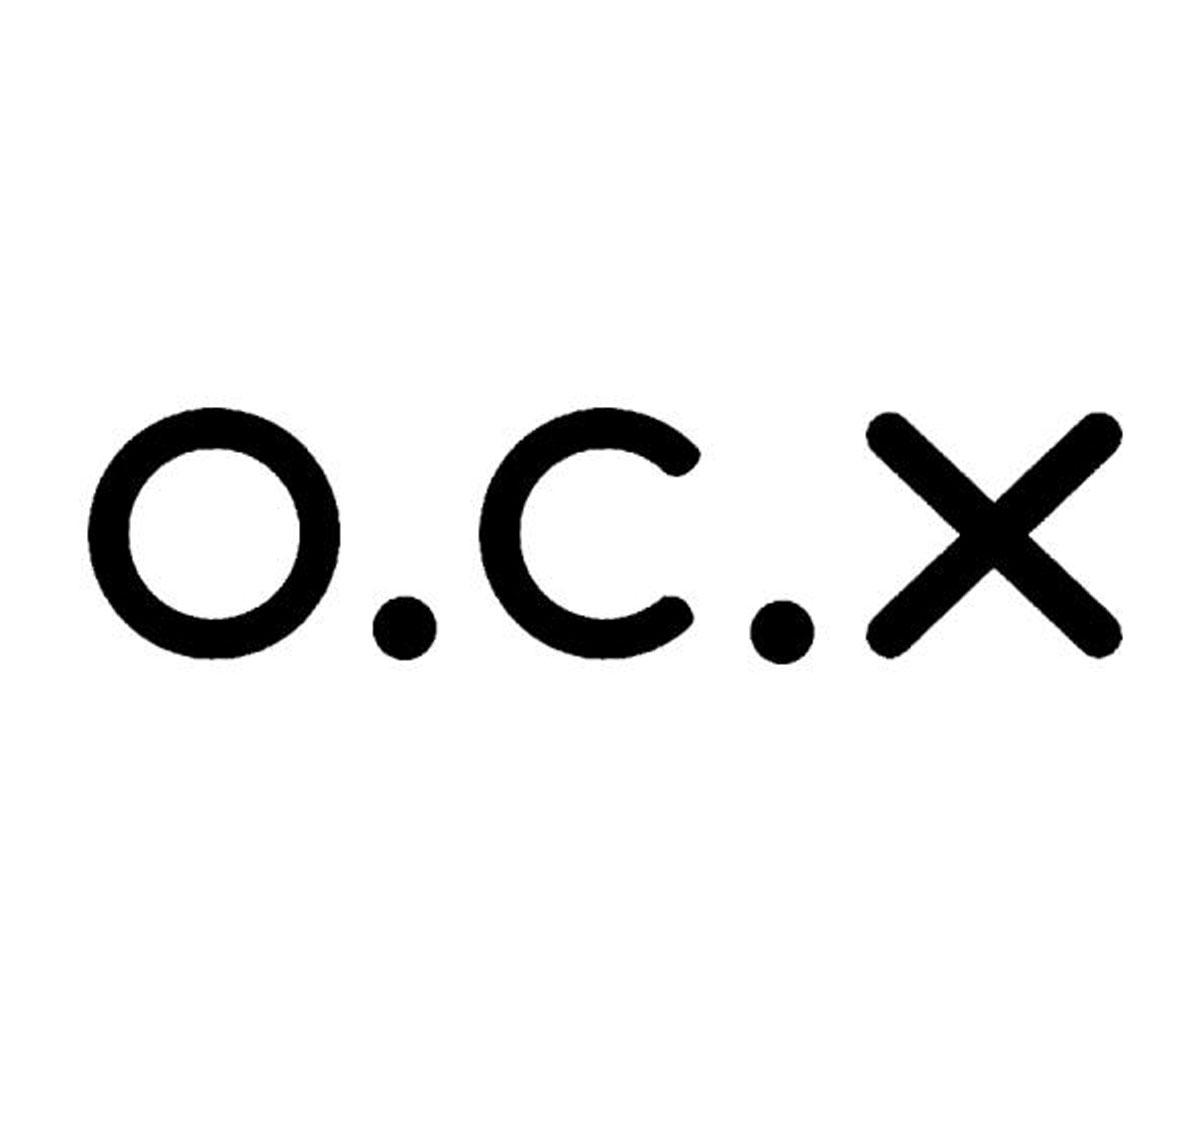 O.C.X